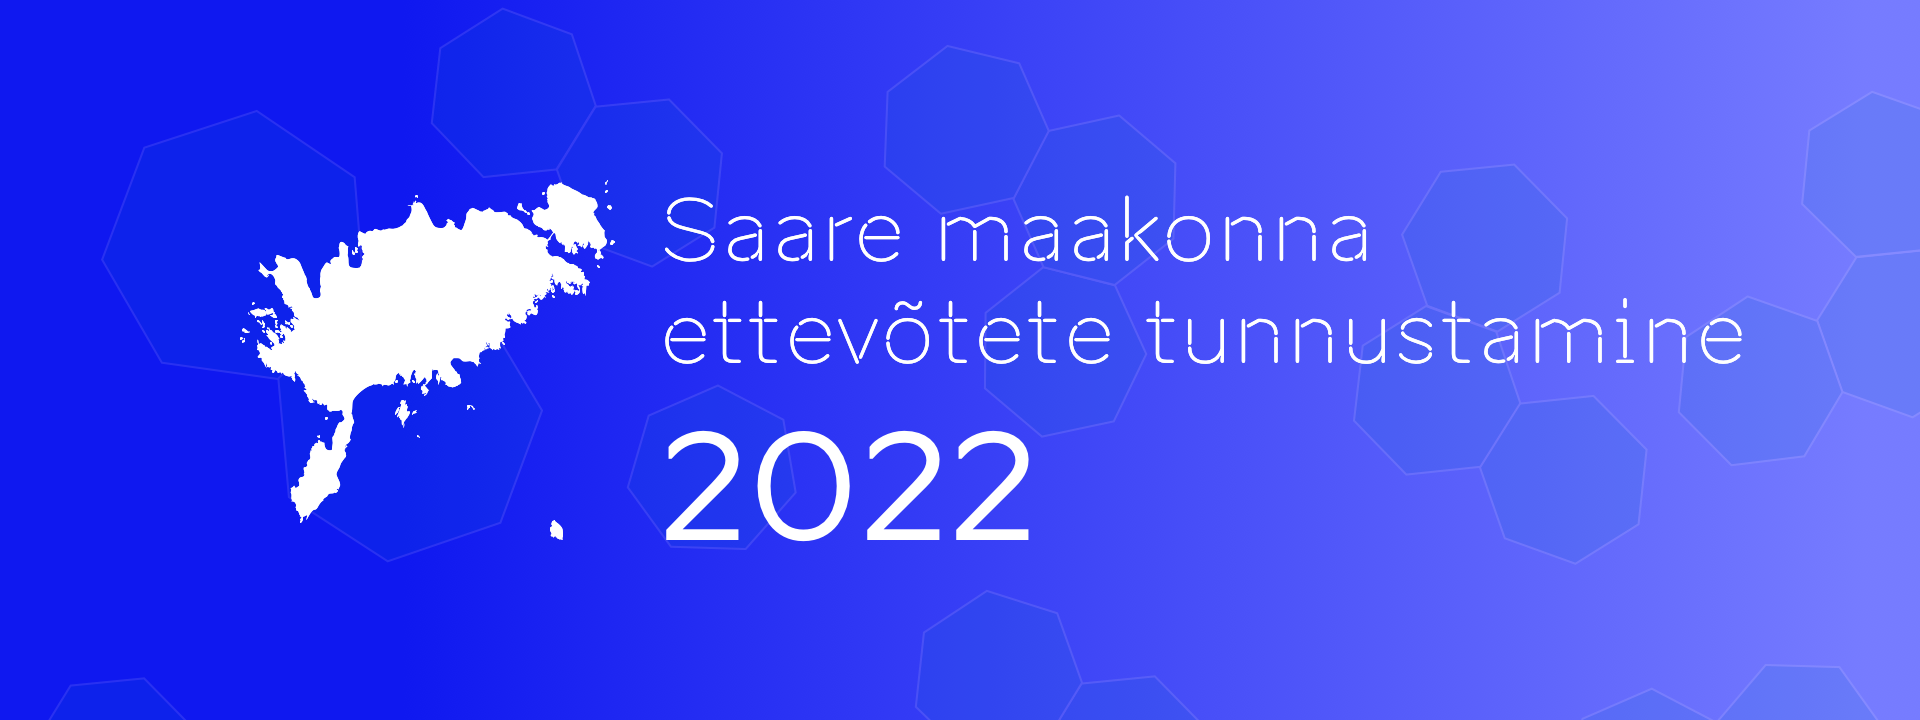 Ettevõtete tunnustamine 2022 tulemused Saaremaa Minusaaremaa.ee